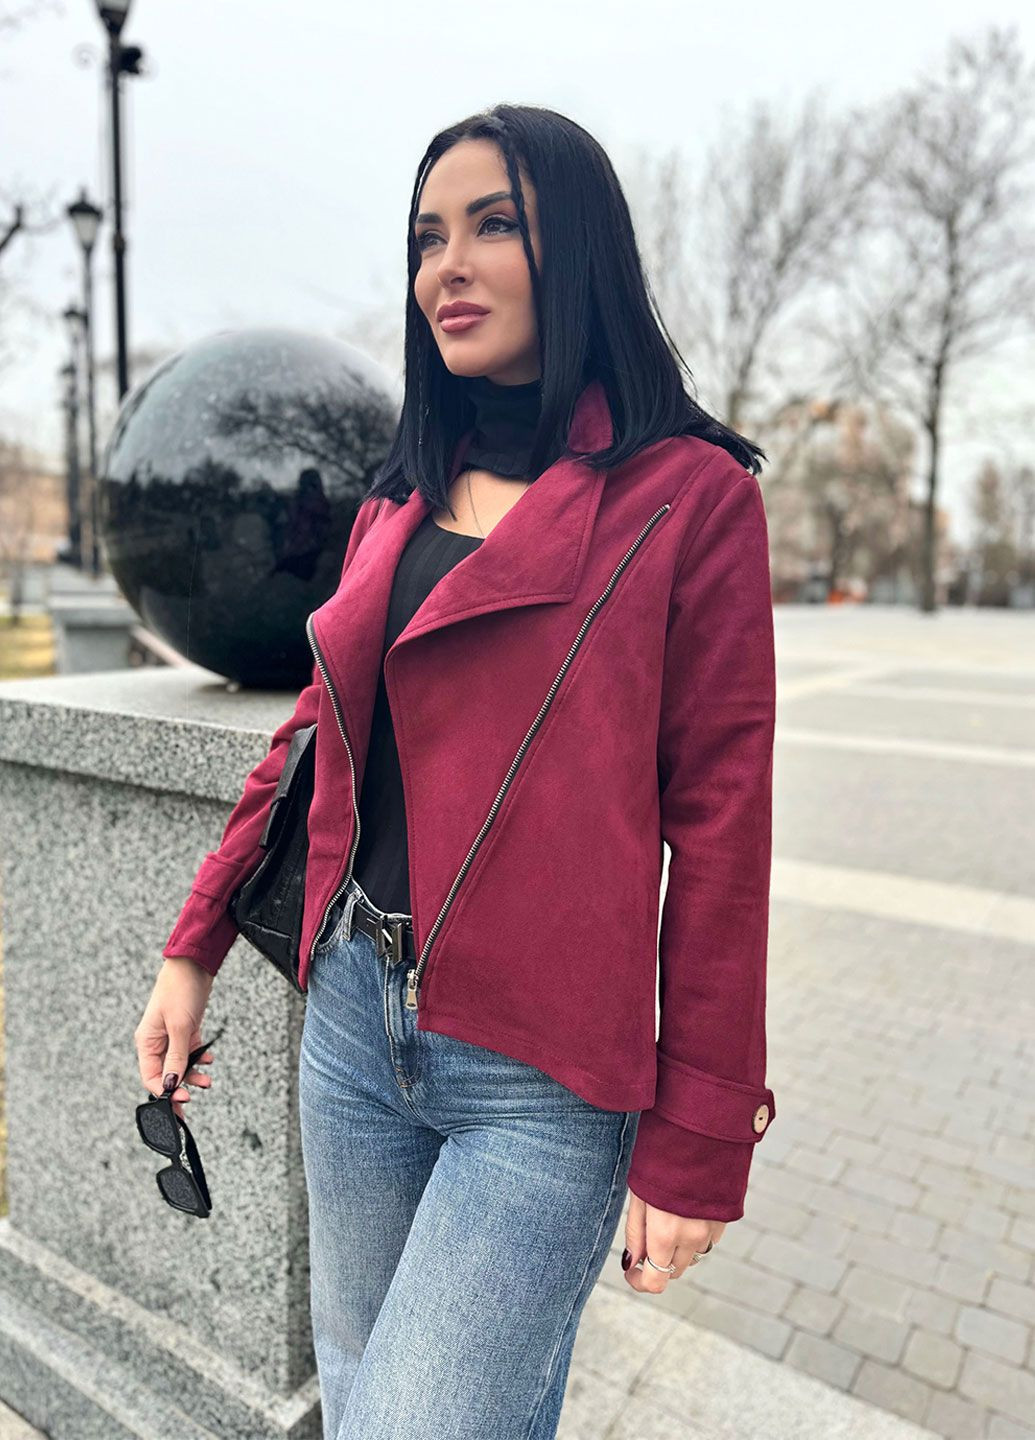 Бордовая куртка-жакет косуха Fashion Girl Nessa